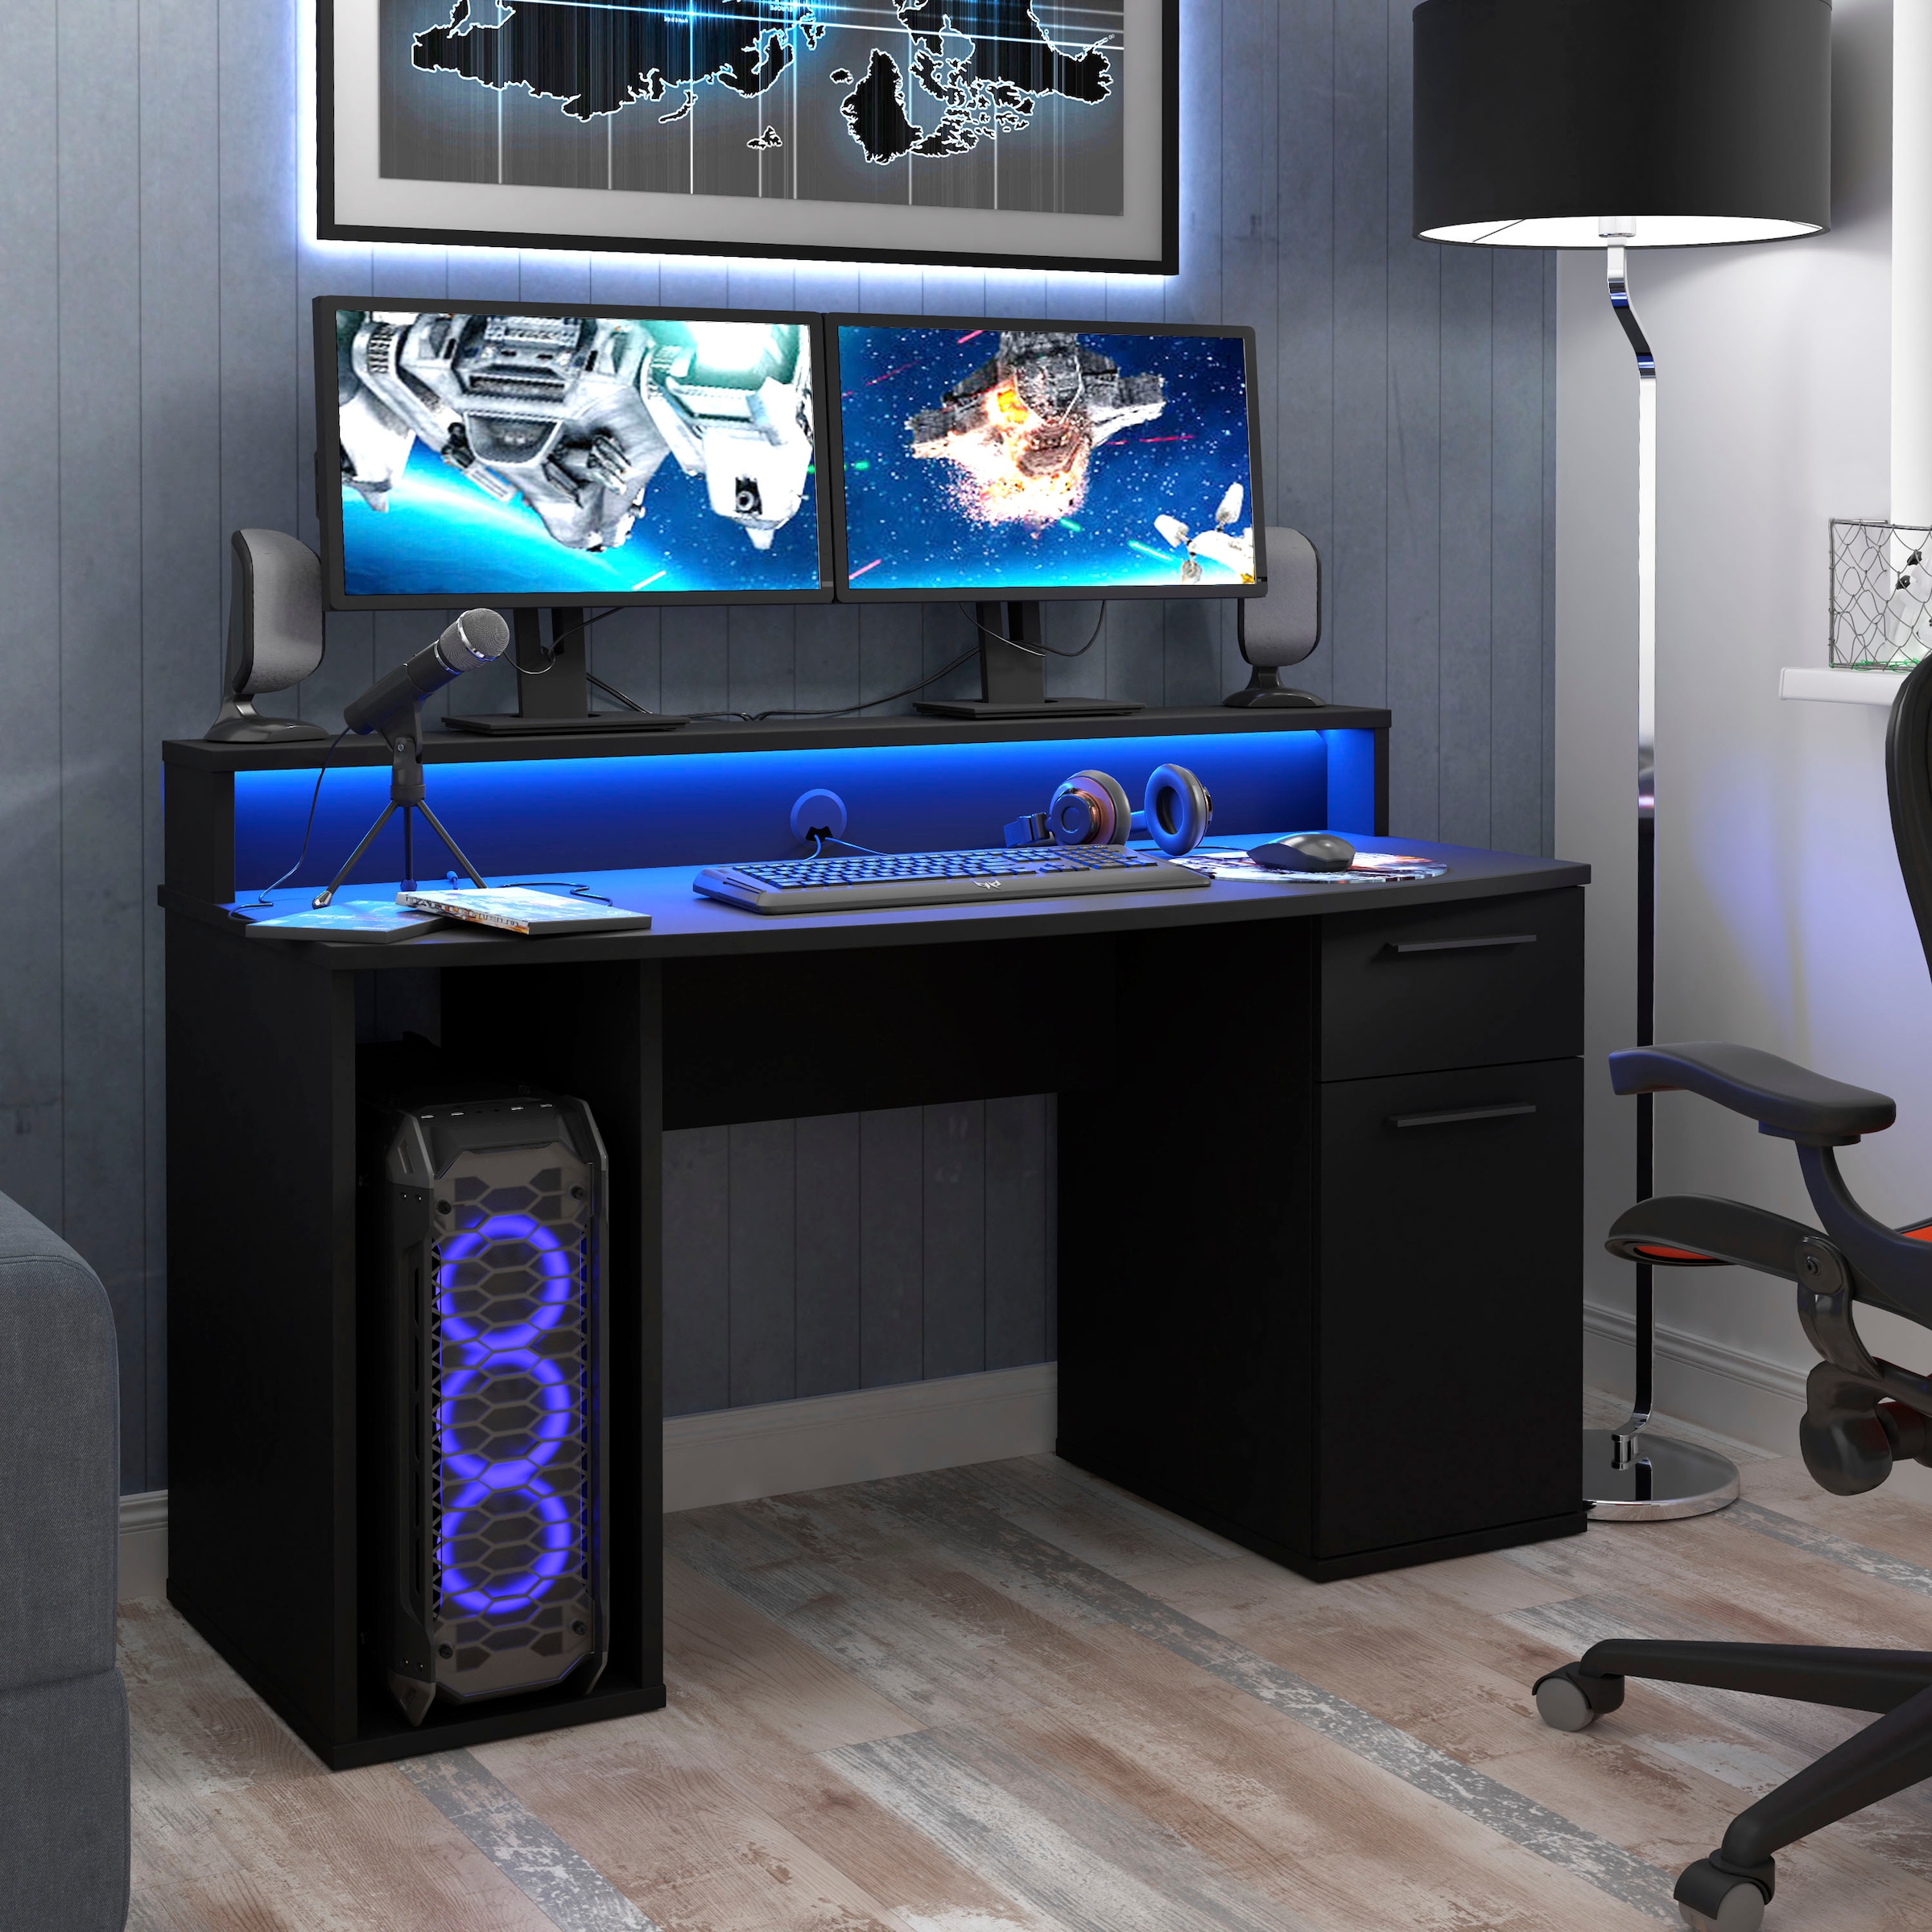 FORTE Gamingtisch »Ayo«, mit LED-RGB Beleuchtung, moderner Schreibtisch, Breite 140 cm